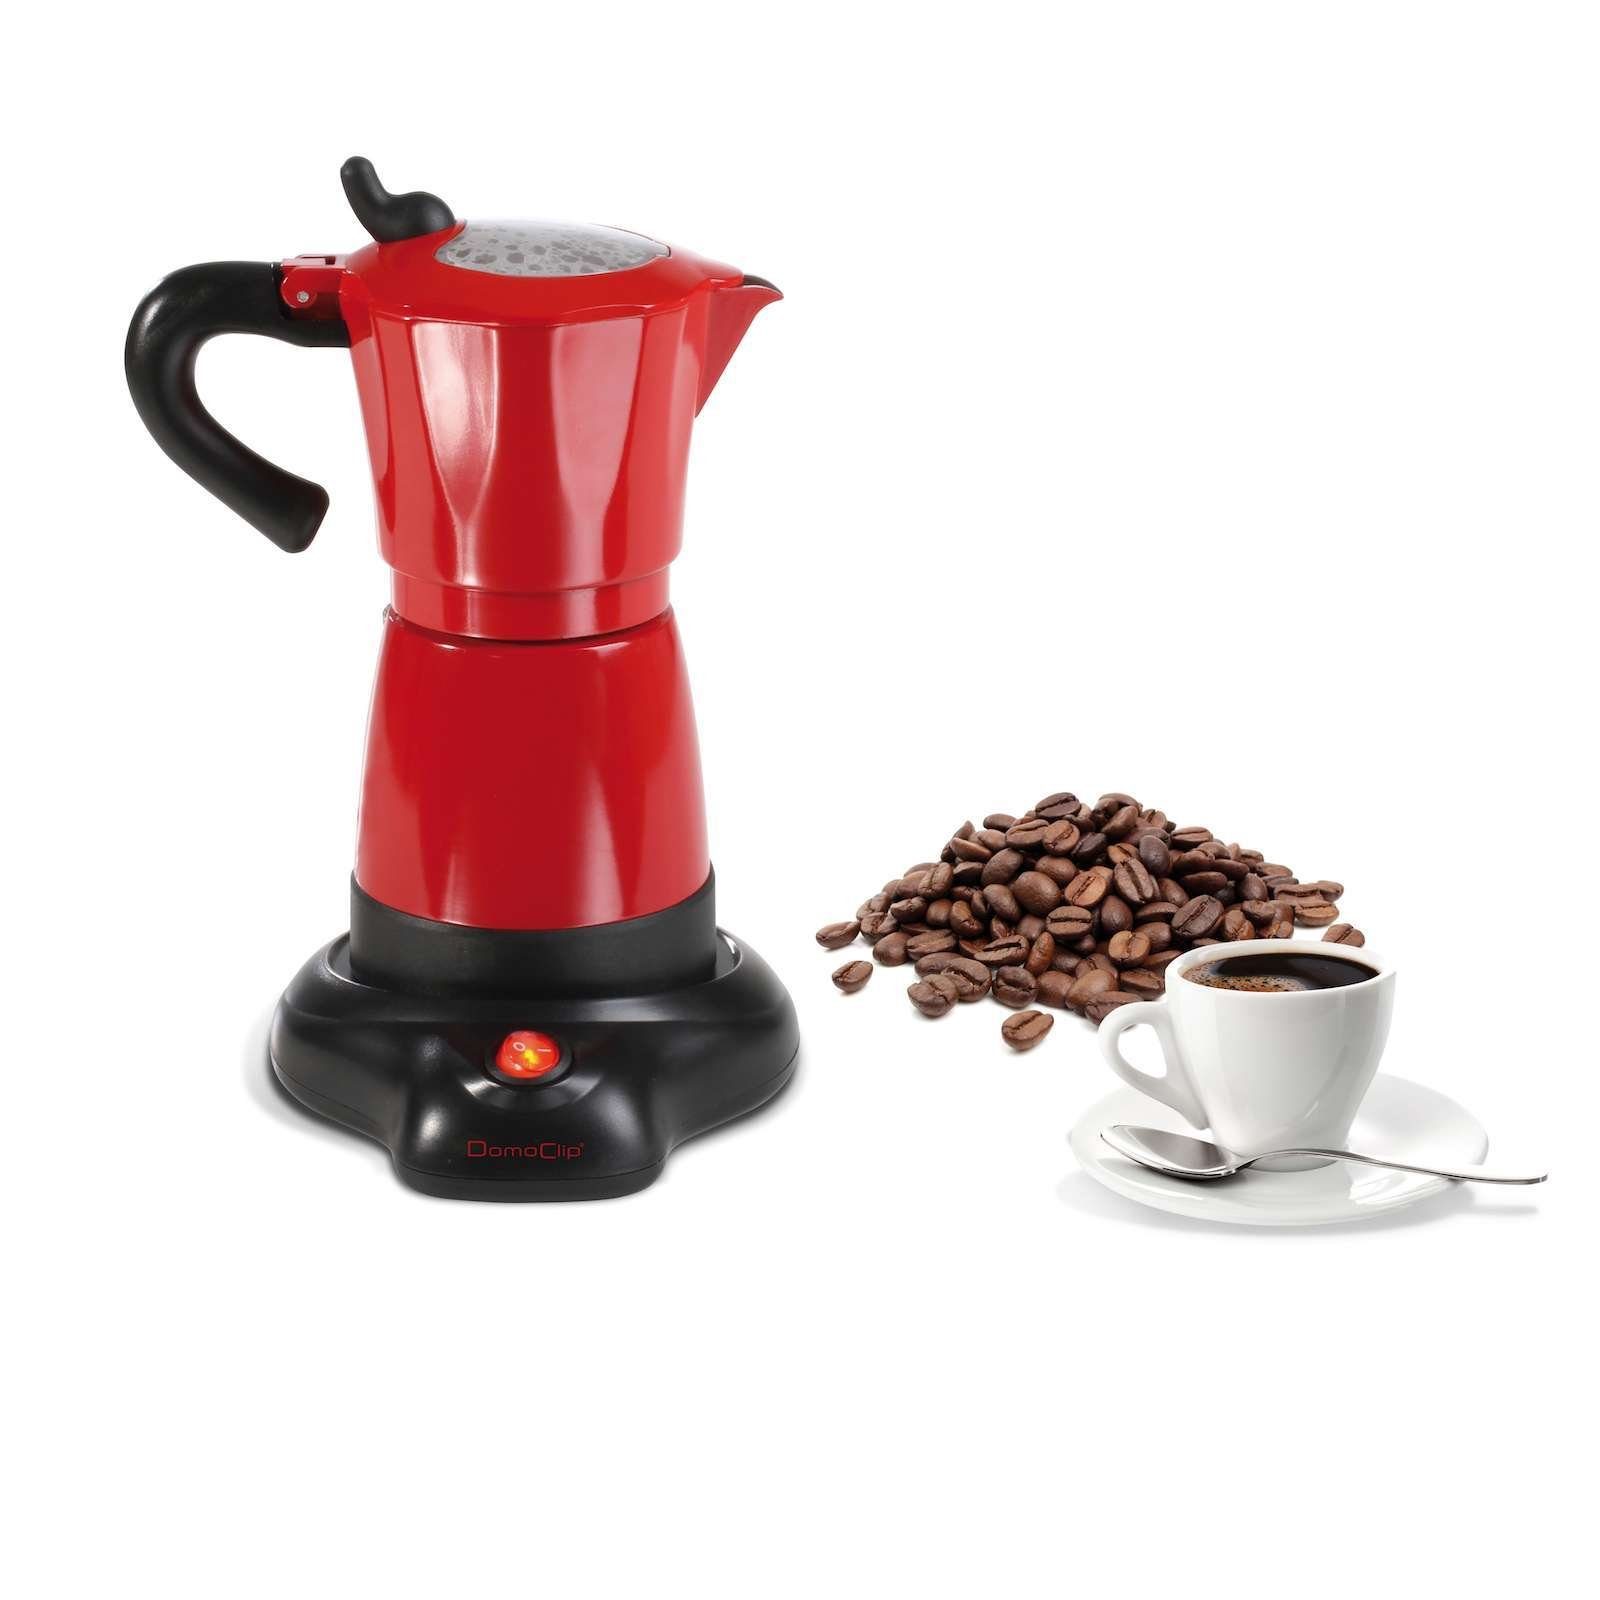 LIVOO Espressokocher LIVOO Espressokocher Elektrisch 6 Tassen Espresso  Kanne 300ml italienisch DOD117 online kaufen | OTTO